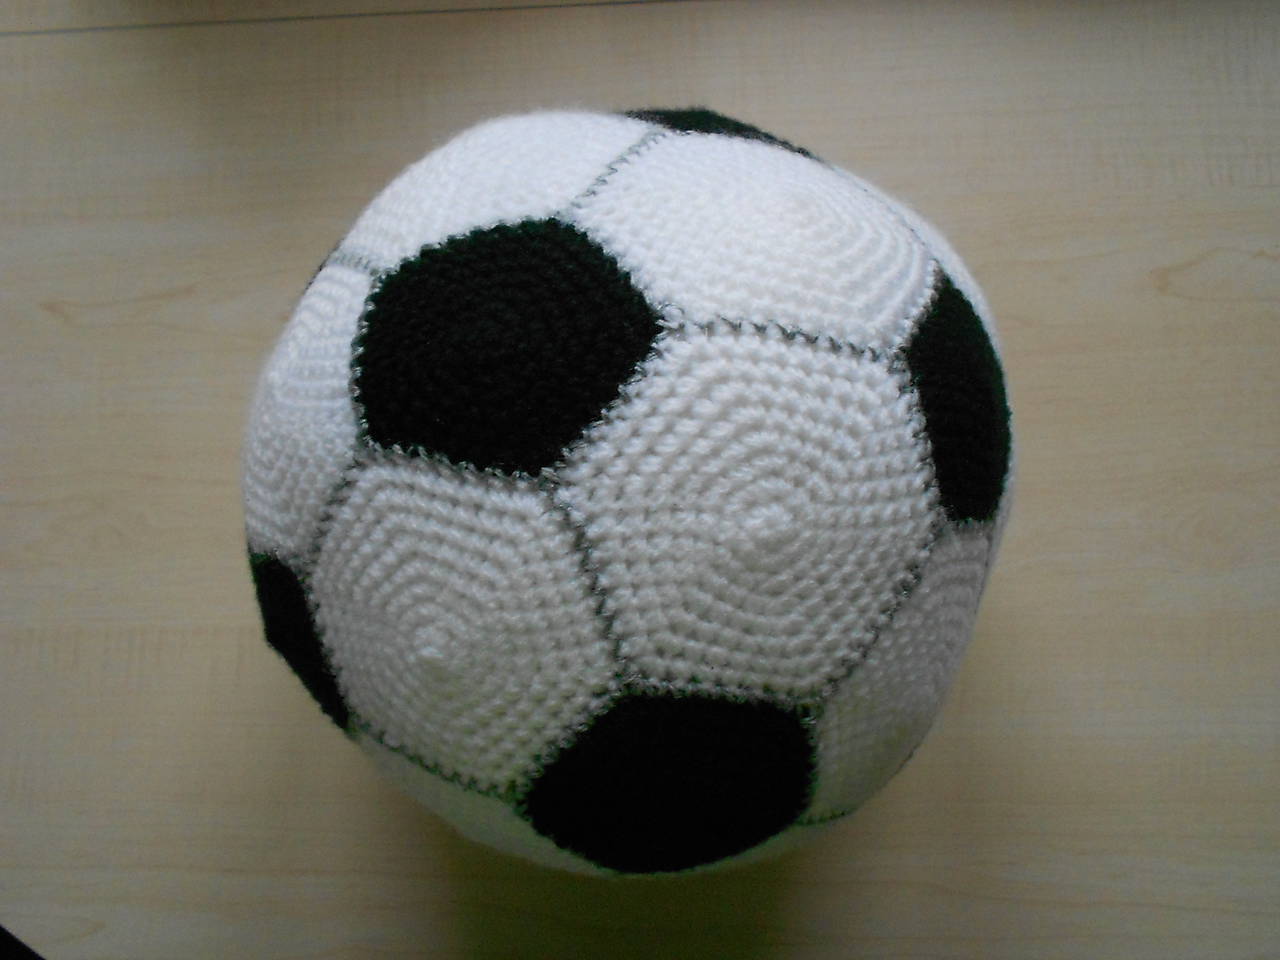 Futbalová lopta